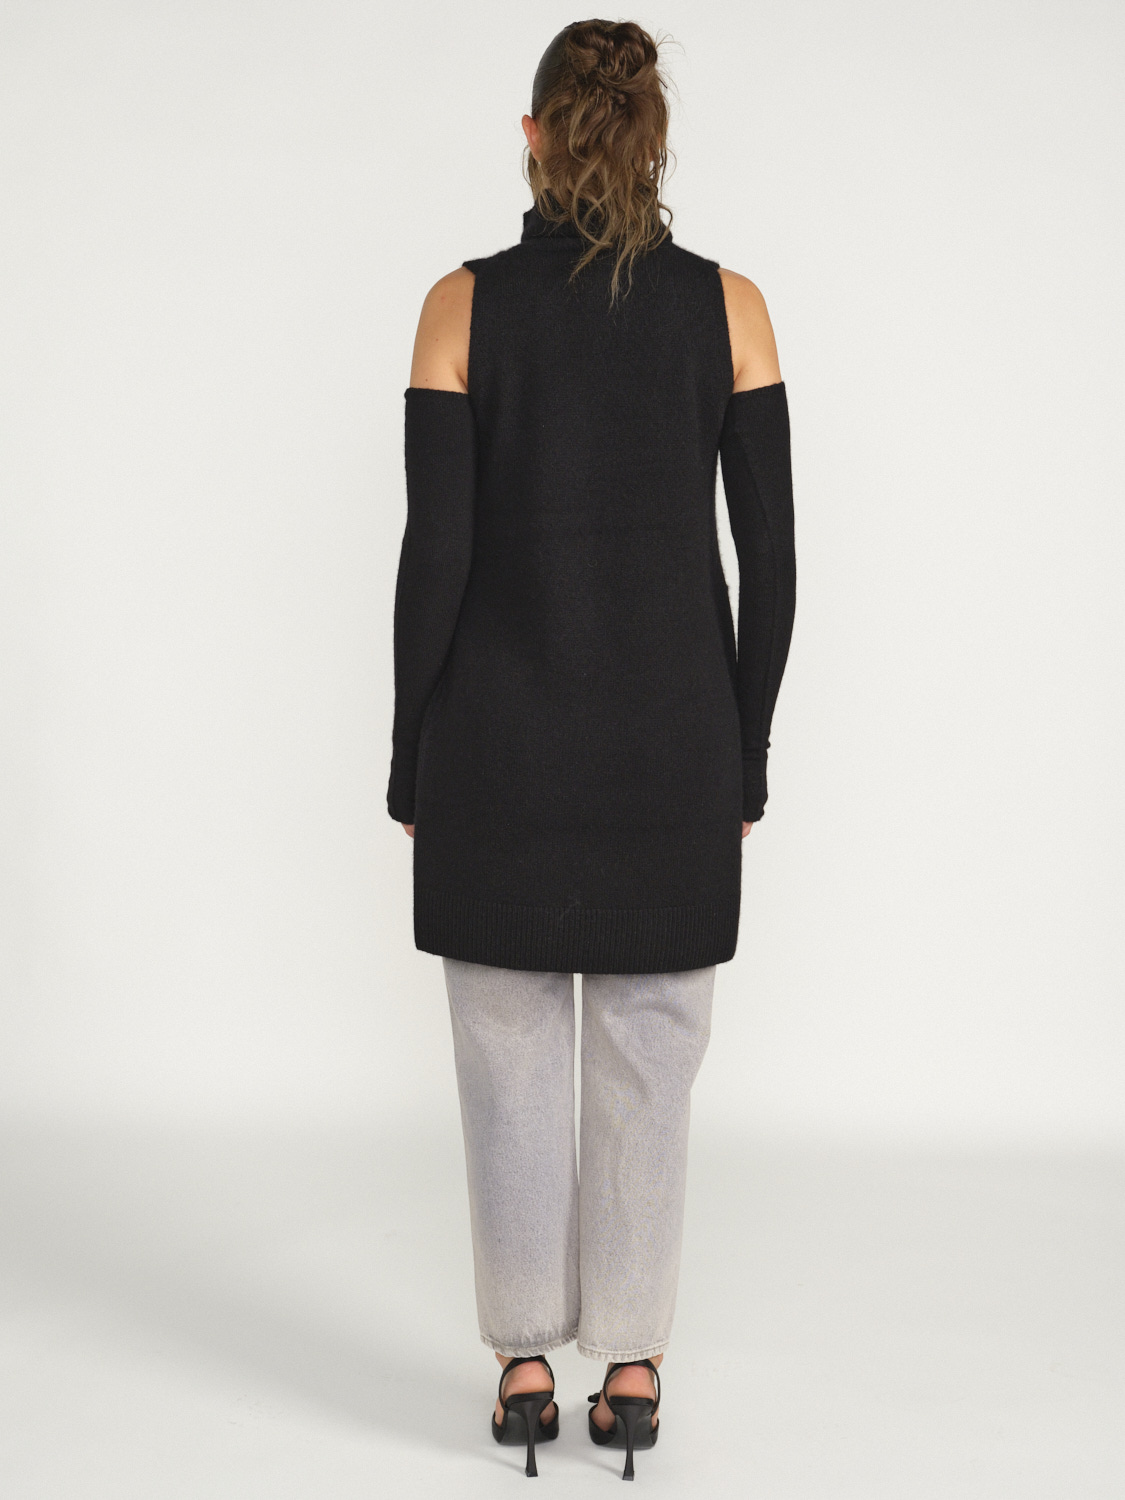 Iris von Arnim Svea – Ärmelloses Kleid aus Cashmere schwarz M